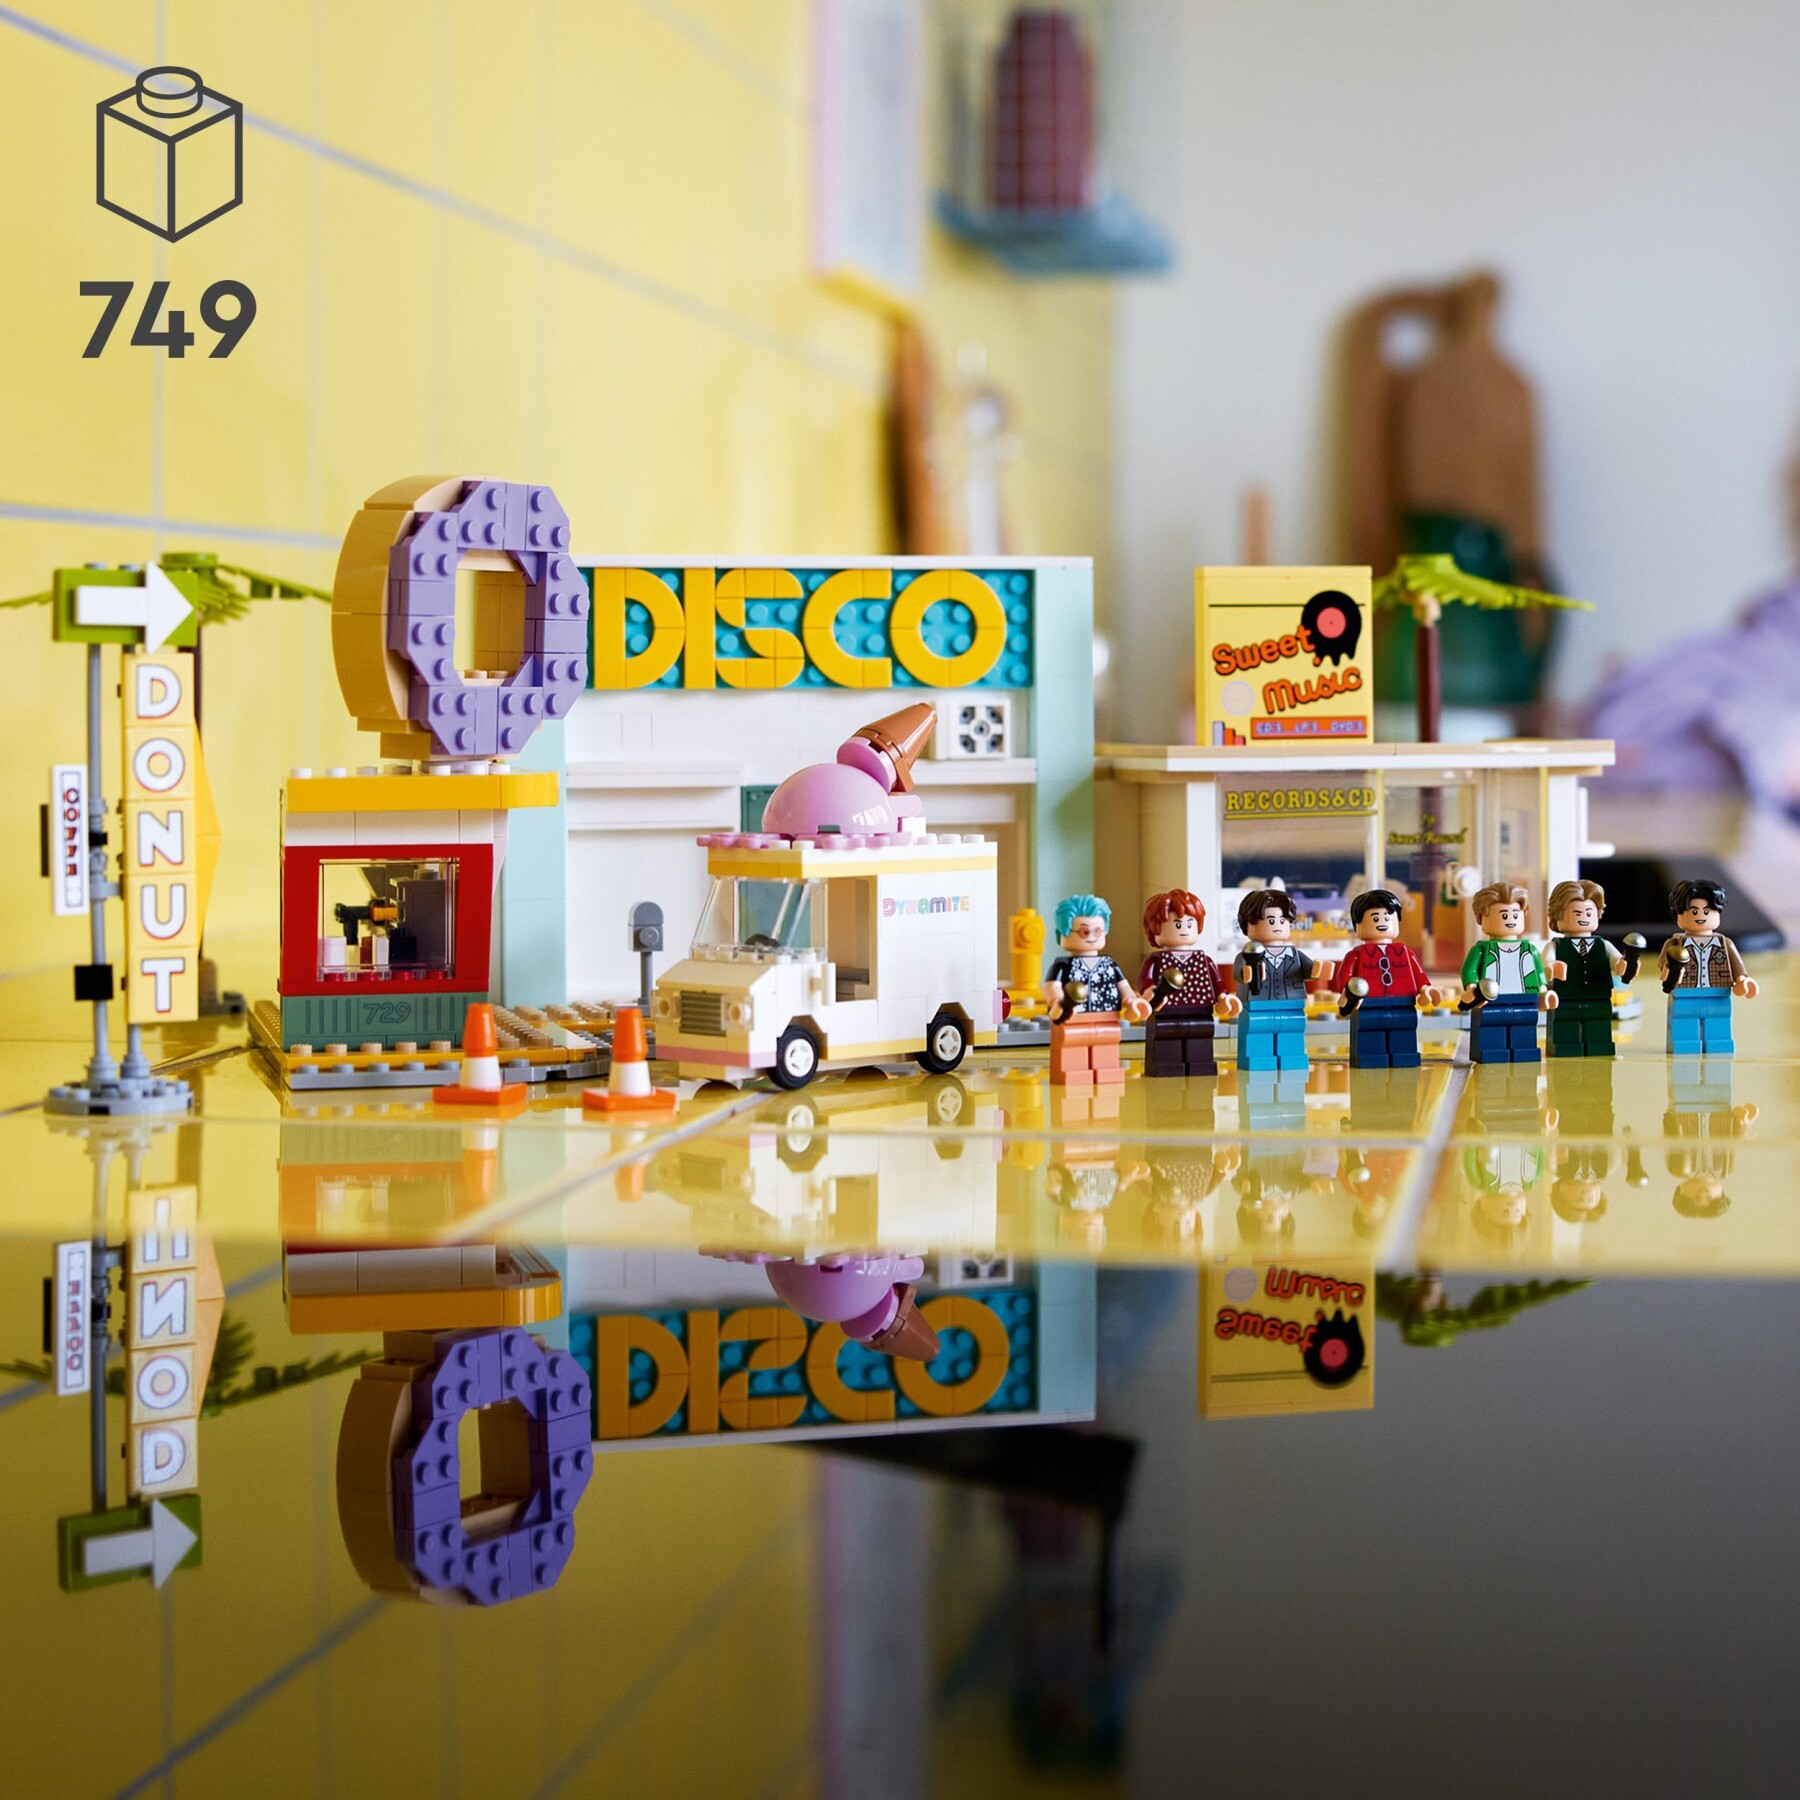 Lego ideas 21339 bts dynamite, set con 7 minifigure della famosa band k-pop, merchandise da collezione, idea regalo per i fan - LEGO IDEAS